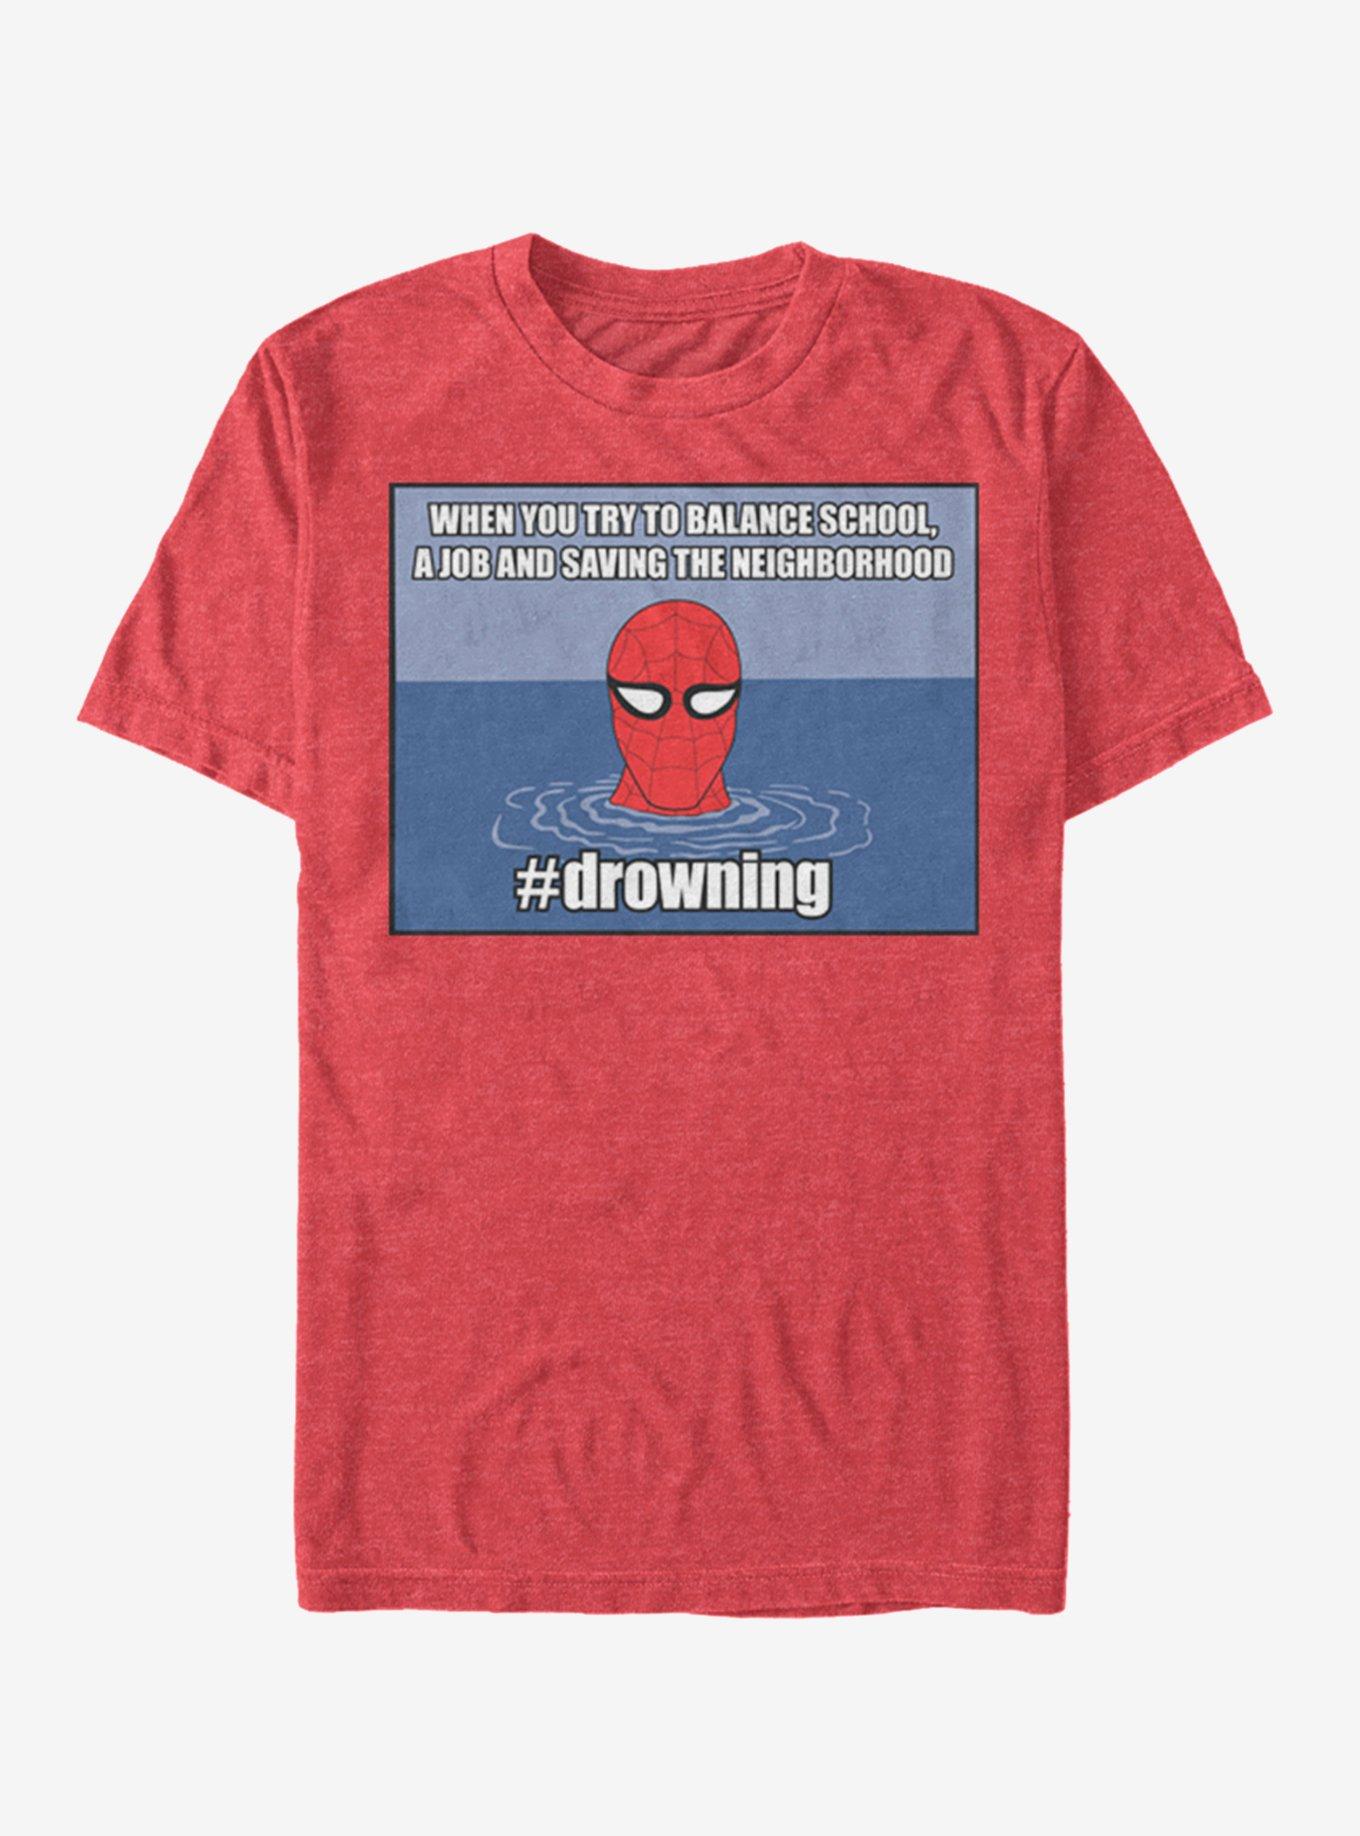 Marvel Spider-Man #drowning T-Shirt, RED HTR, hi-res